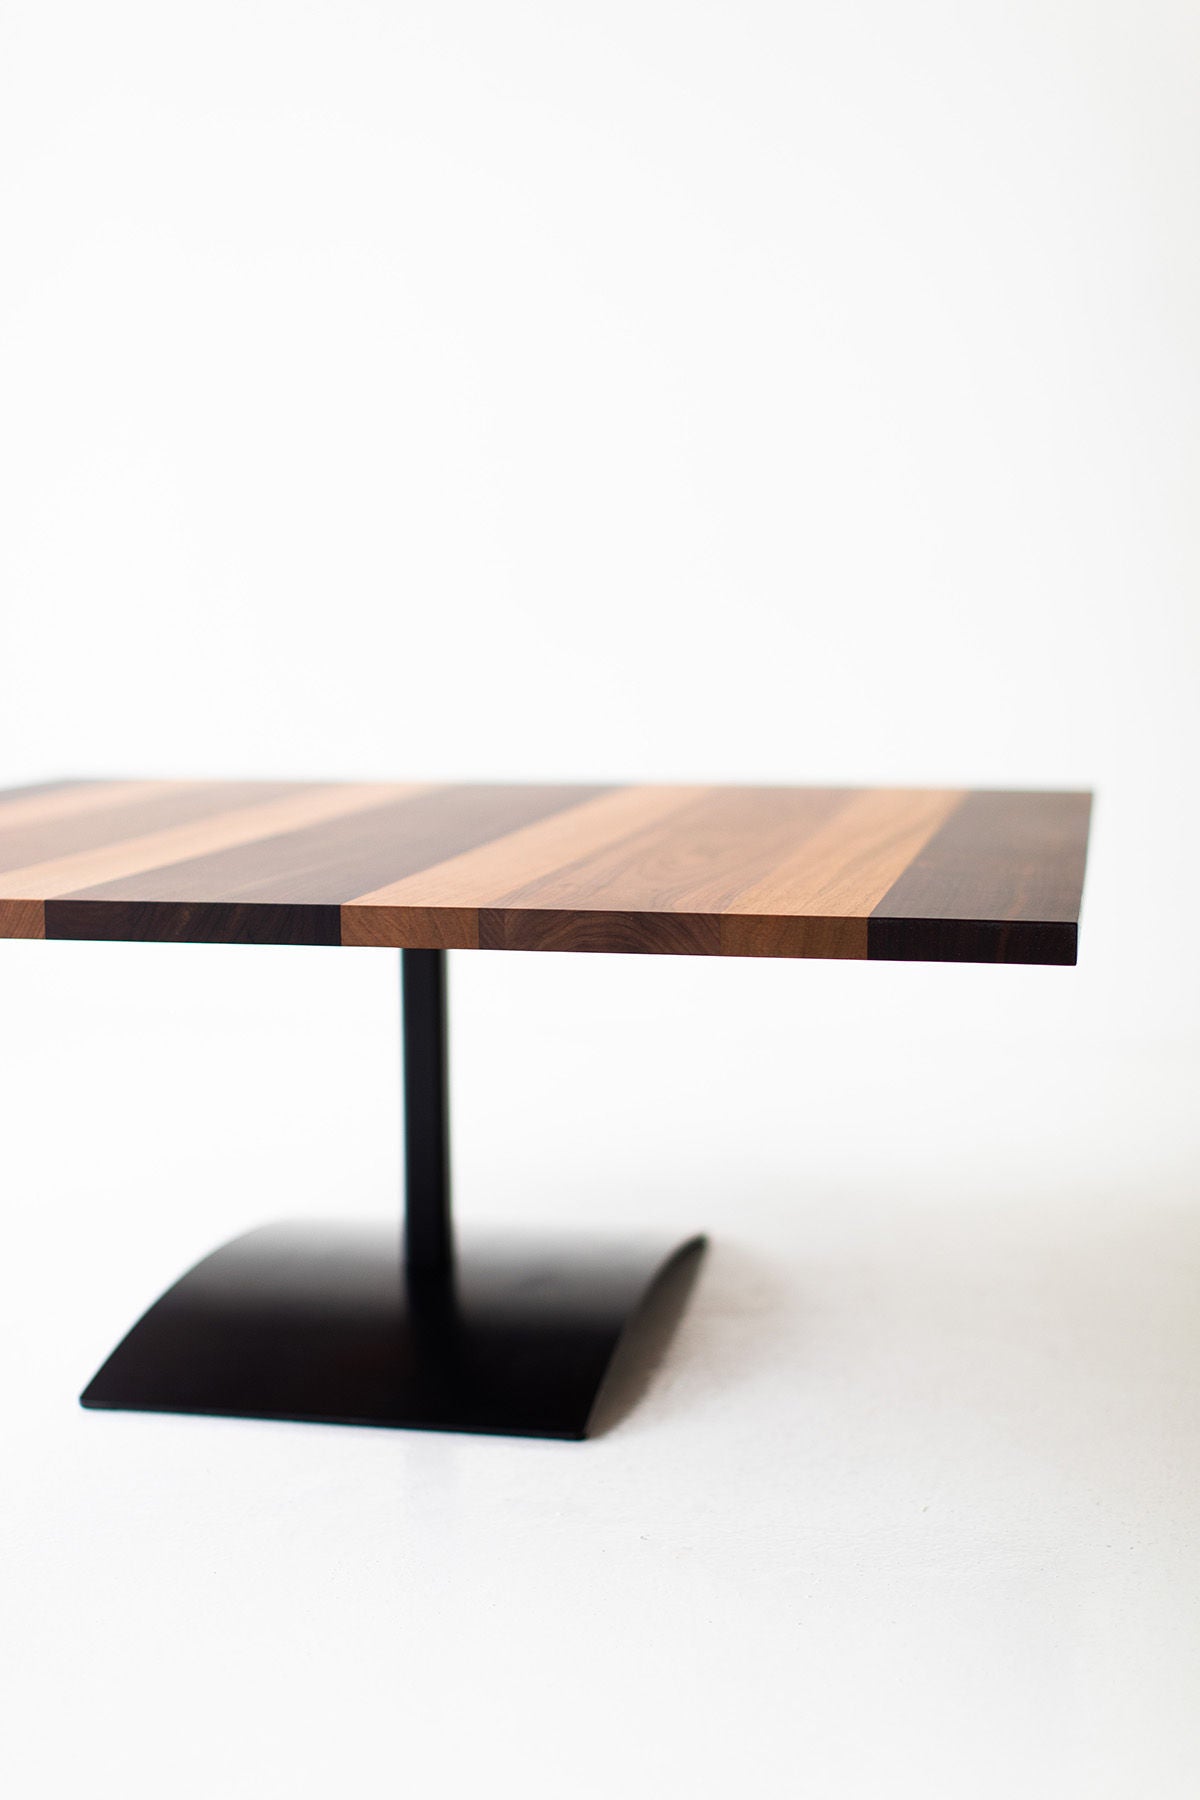 Milo Baughman Striped Top Coffee Table B3933 03